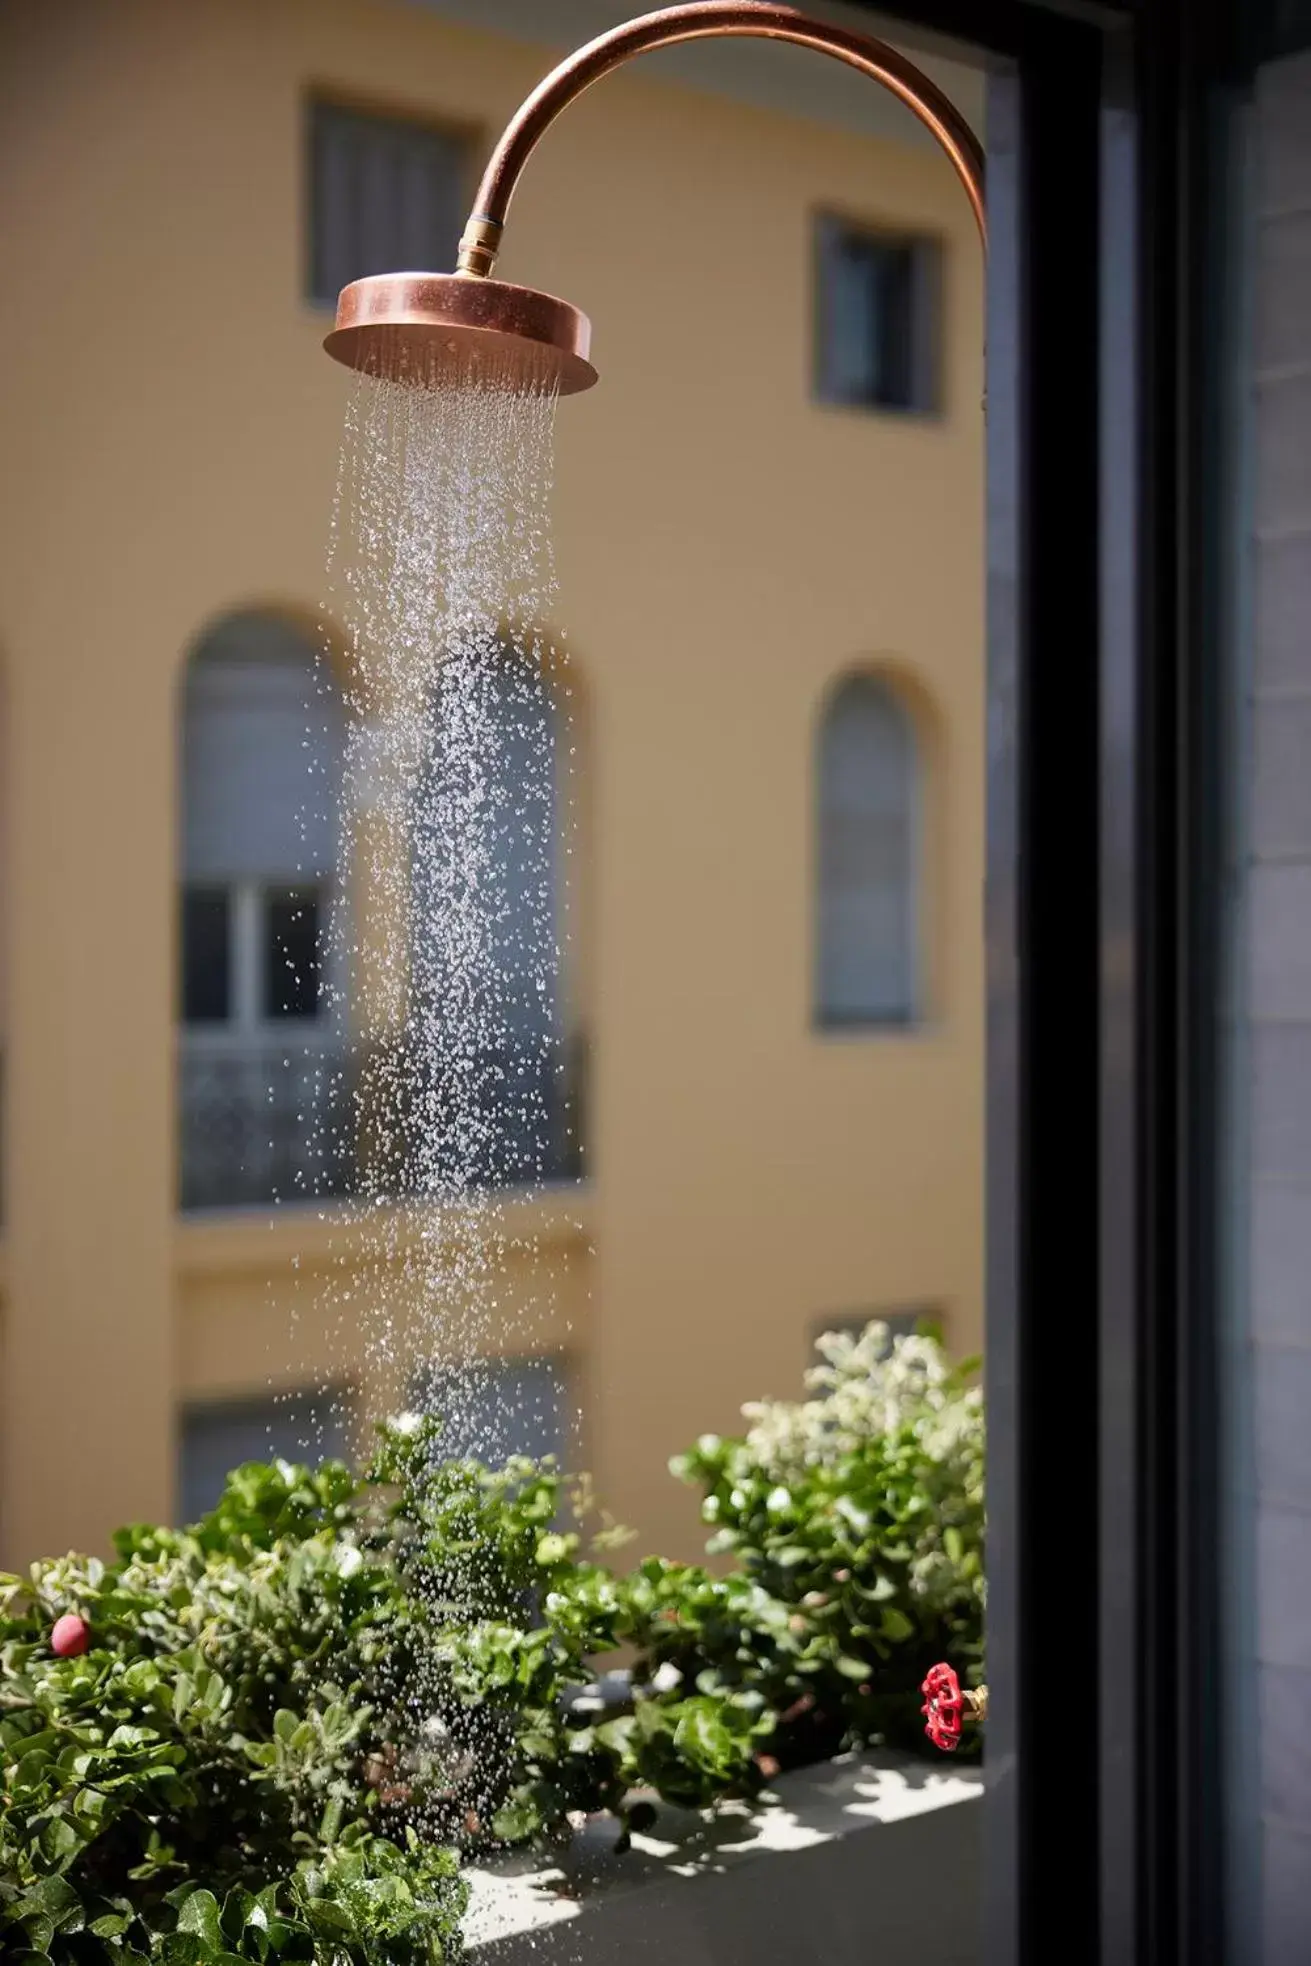 Shower in Hotel Fresh